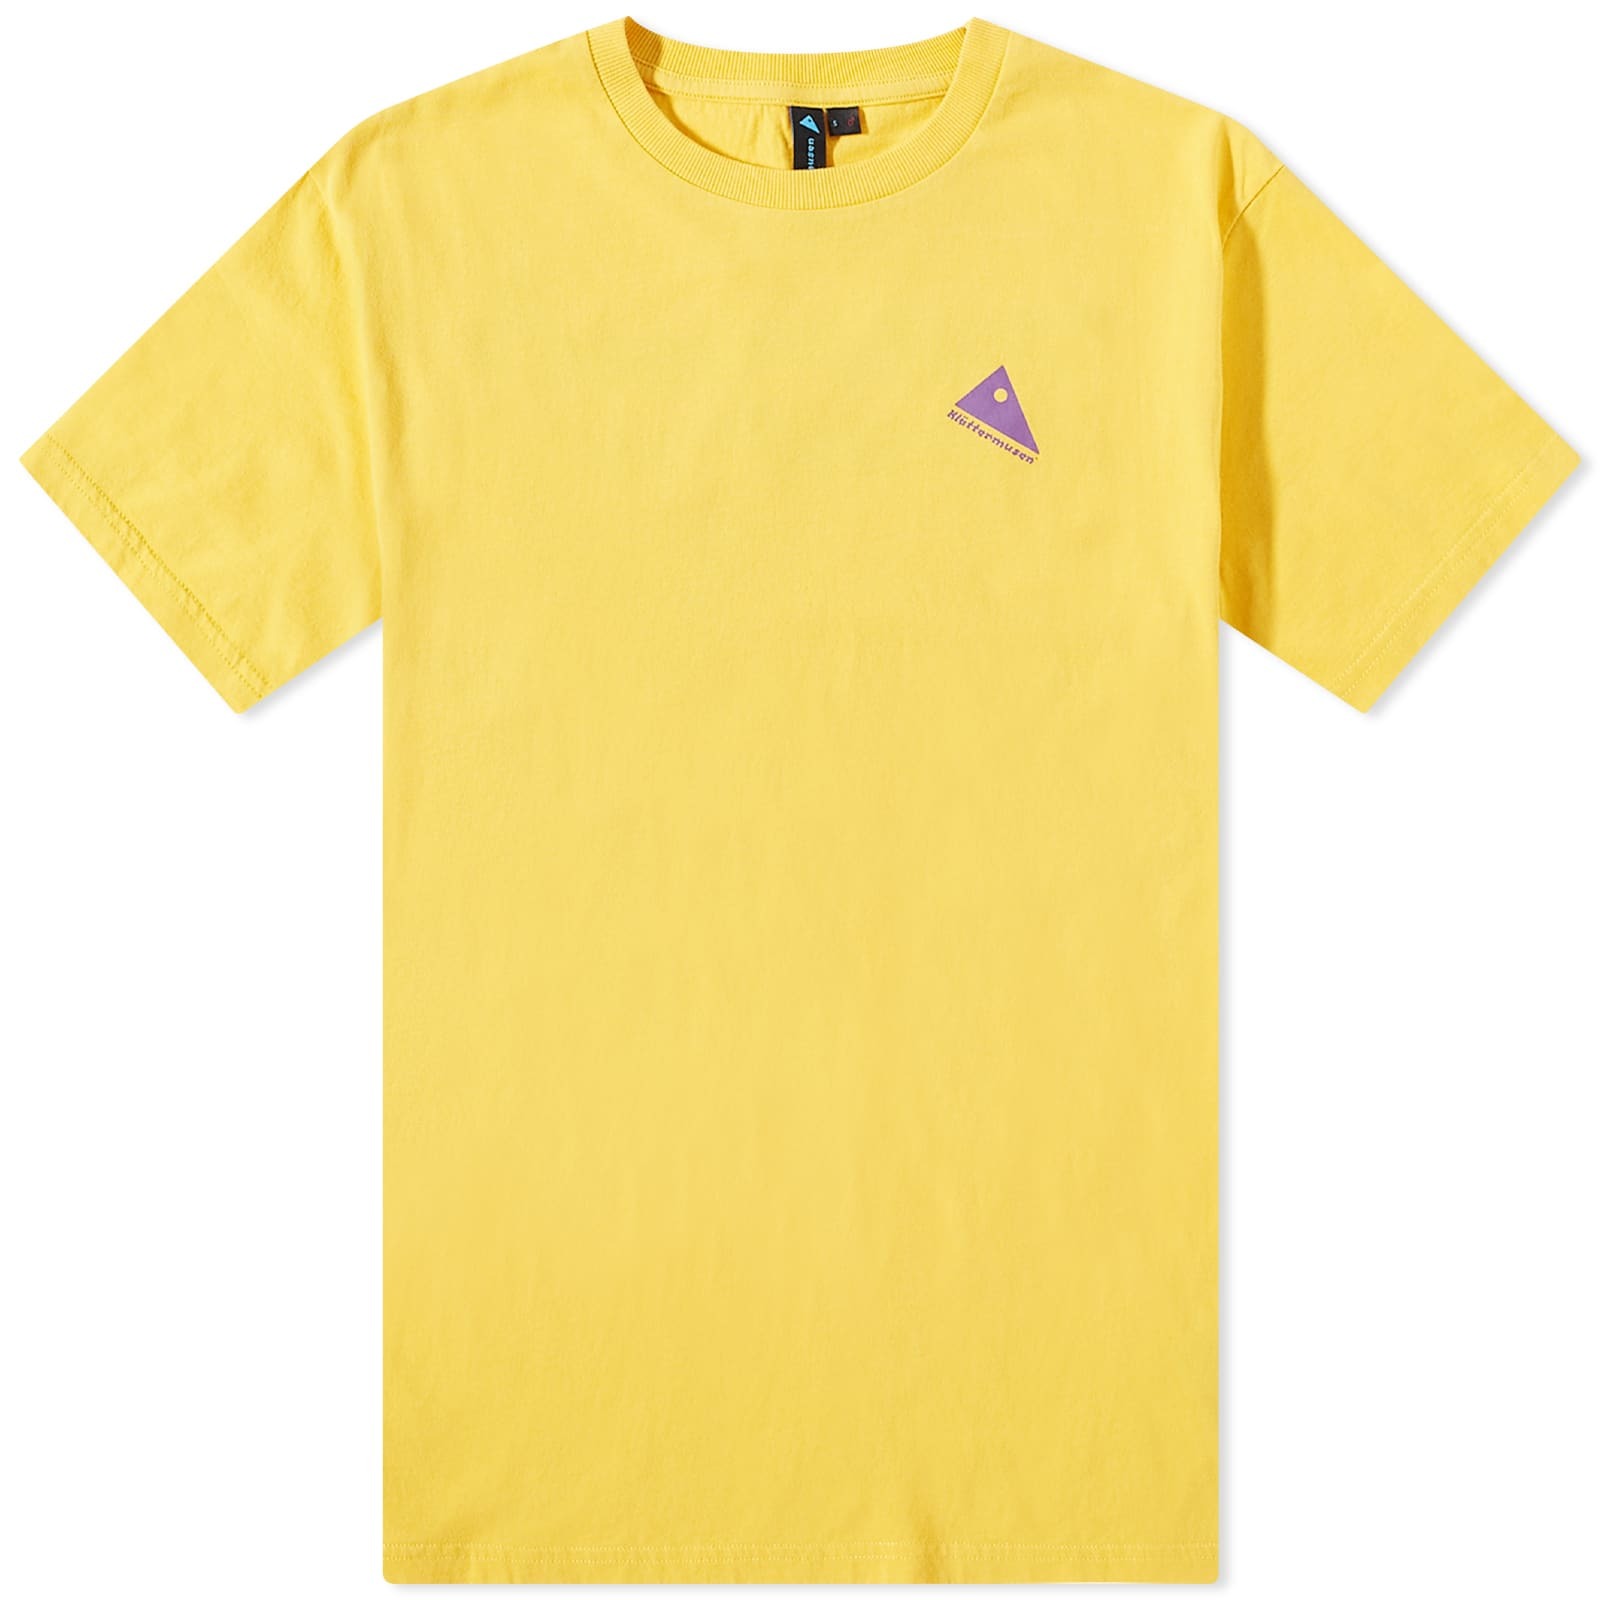 Klättermusen Men's Runa Nomad T-Shirt in Pure Yellow Klättermusen